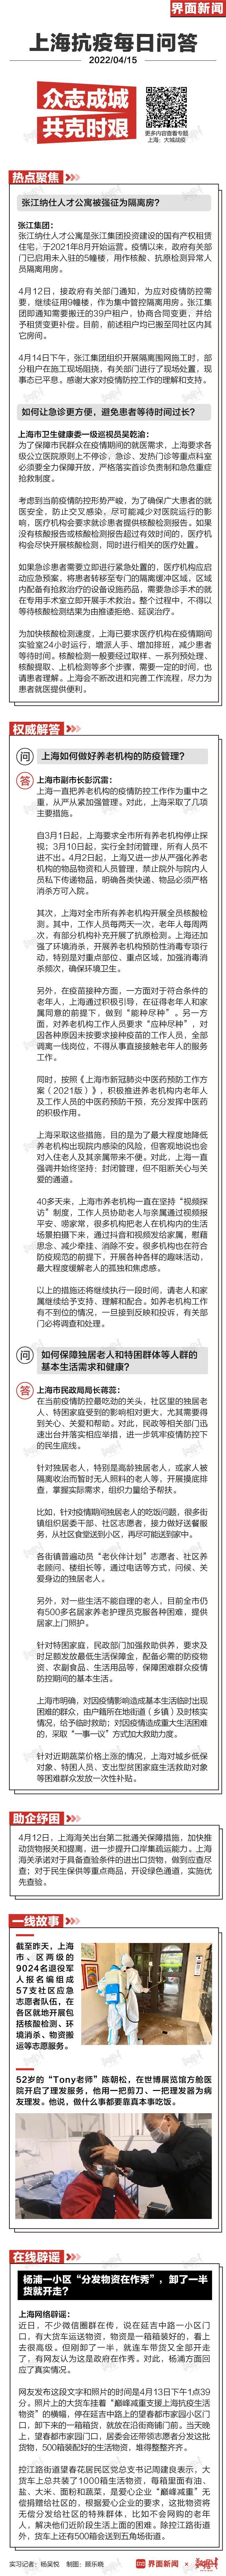 上海抗疫每日问答 | 张江人才公寓被征用为隔离房？如何避免让急诊患者等待时间过长？